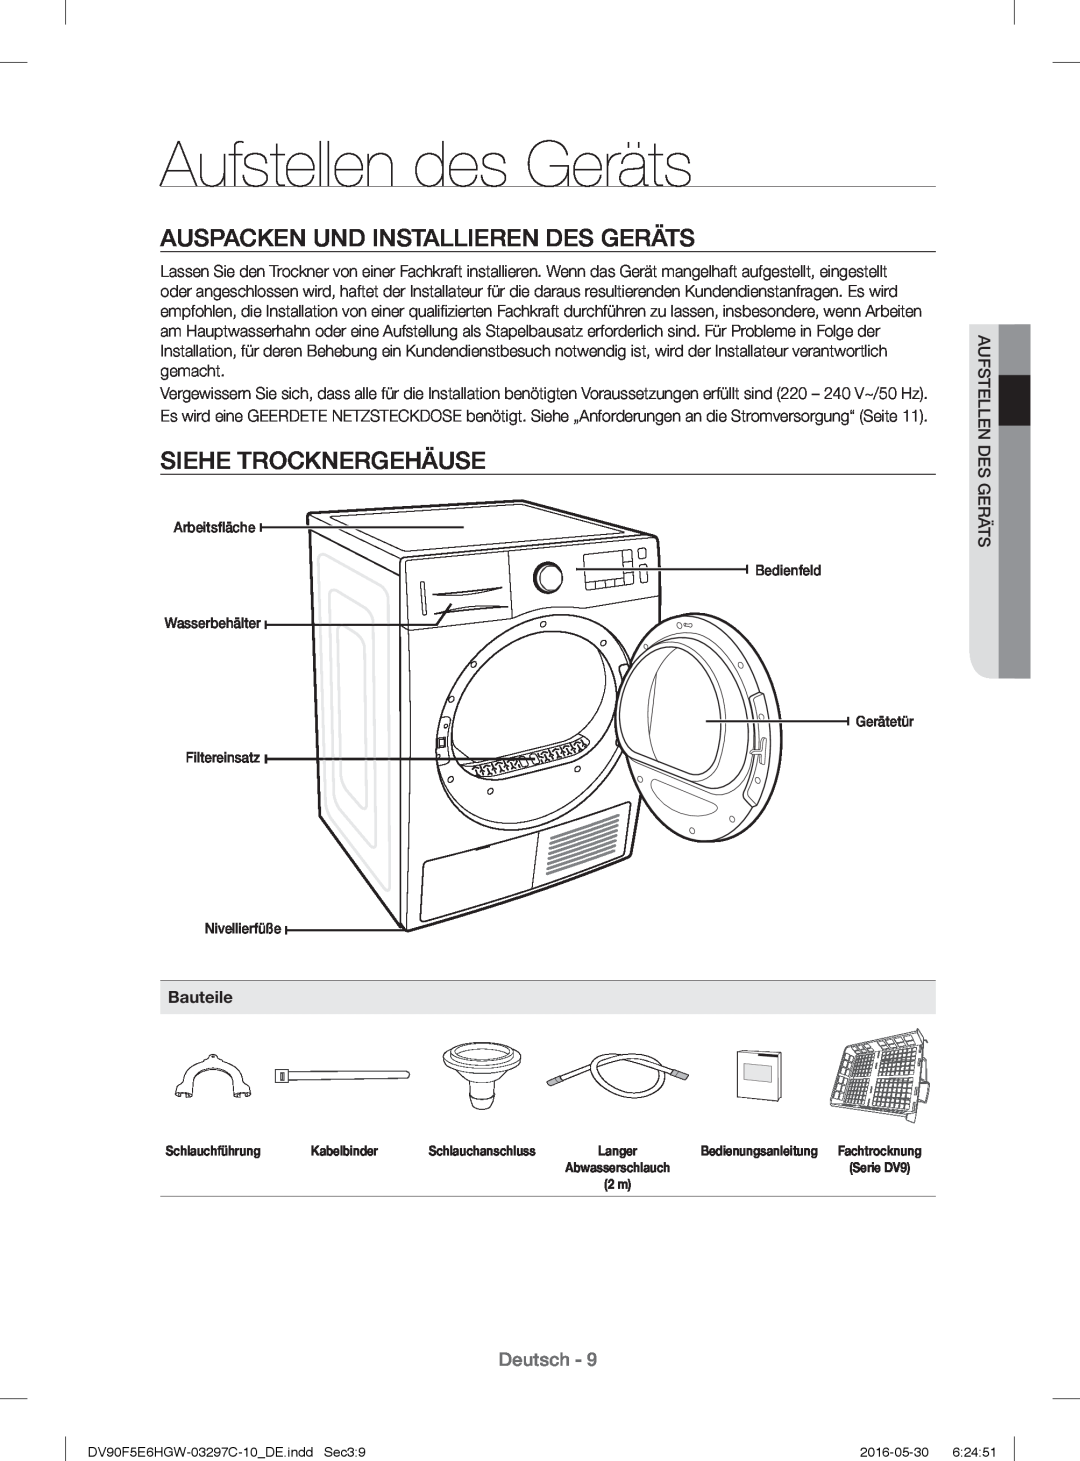 Samsung DV70F5E0HGW/EG manual Aufstellen des Geräts, Auspacken Und Installieren Des Geräts, Siehe Trocknergehäuse, Deutsch 